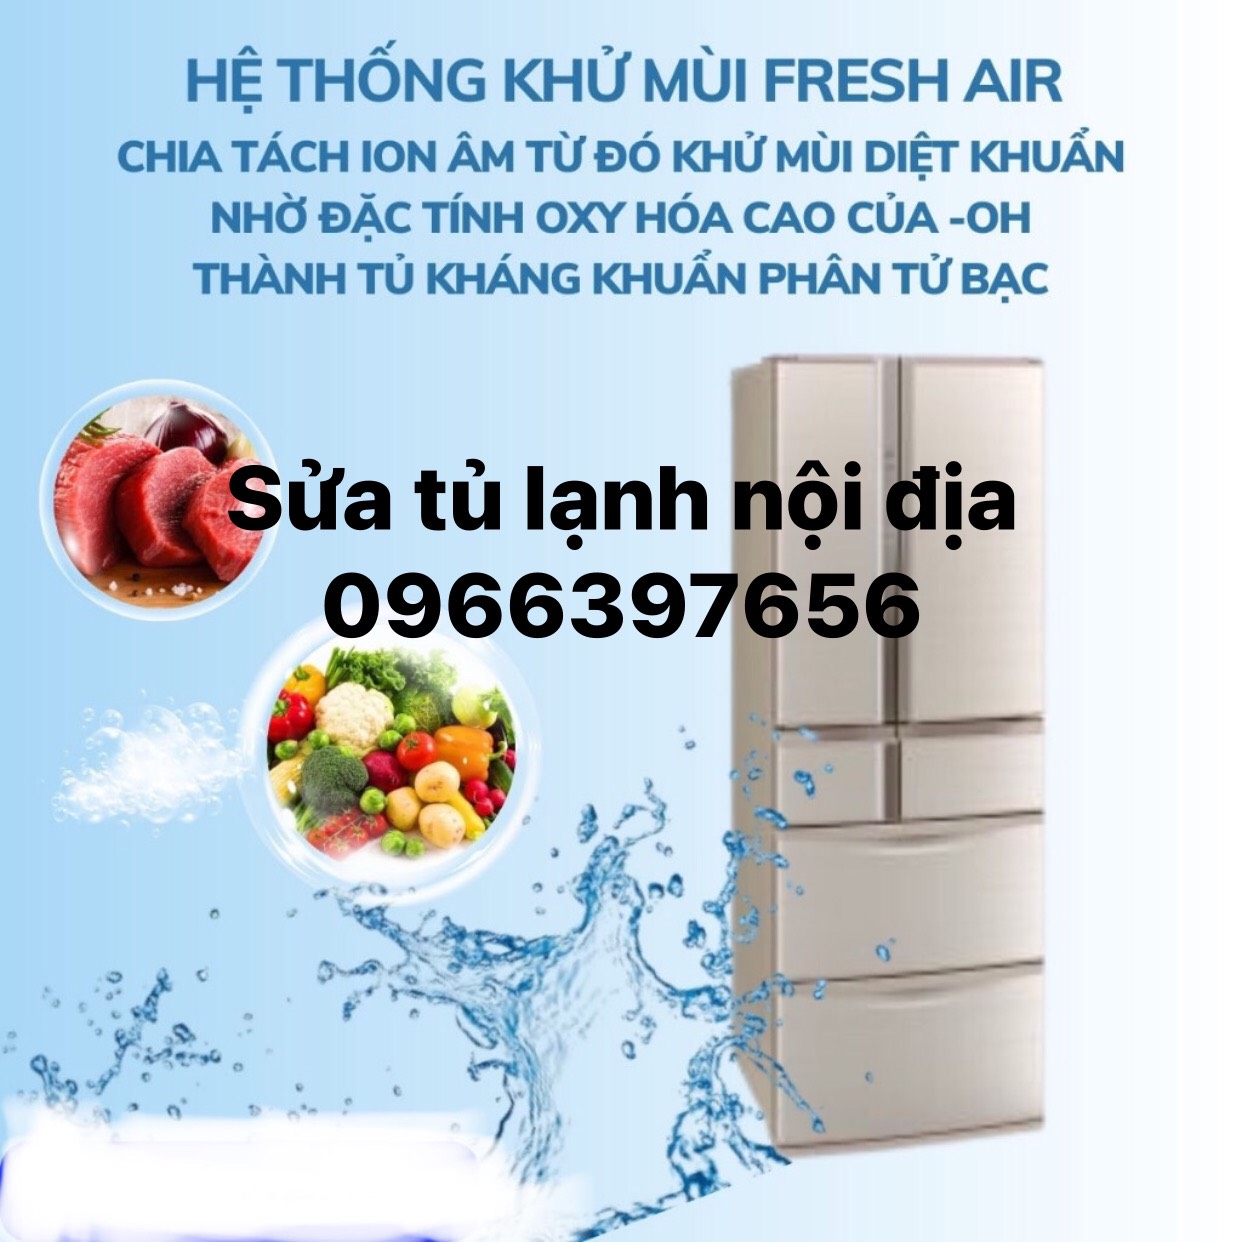 Chuyên sửa chữa tủ lạnh nội địa 110v tại nhà Hà Nội